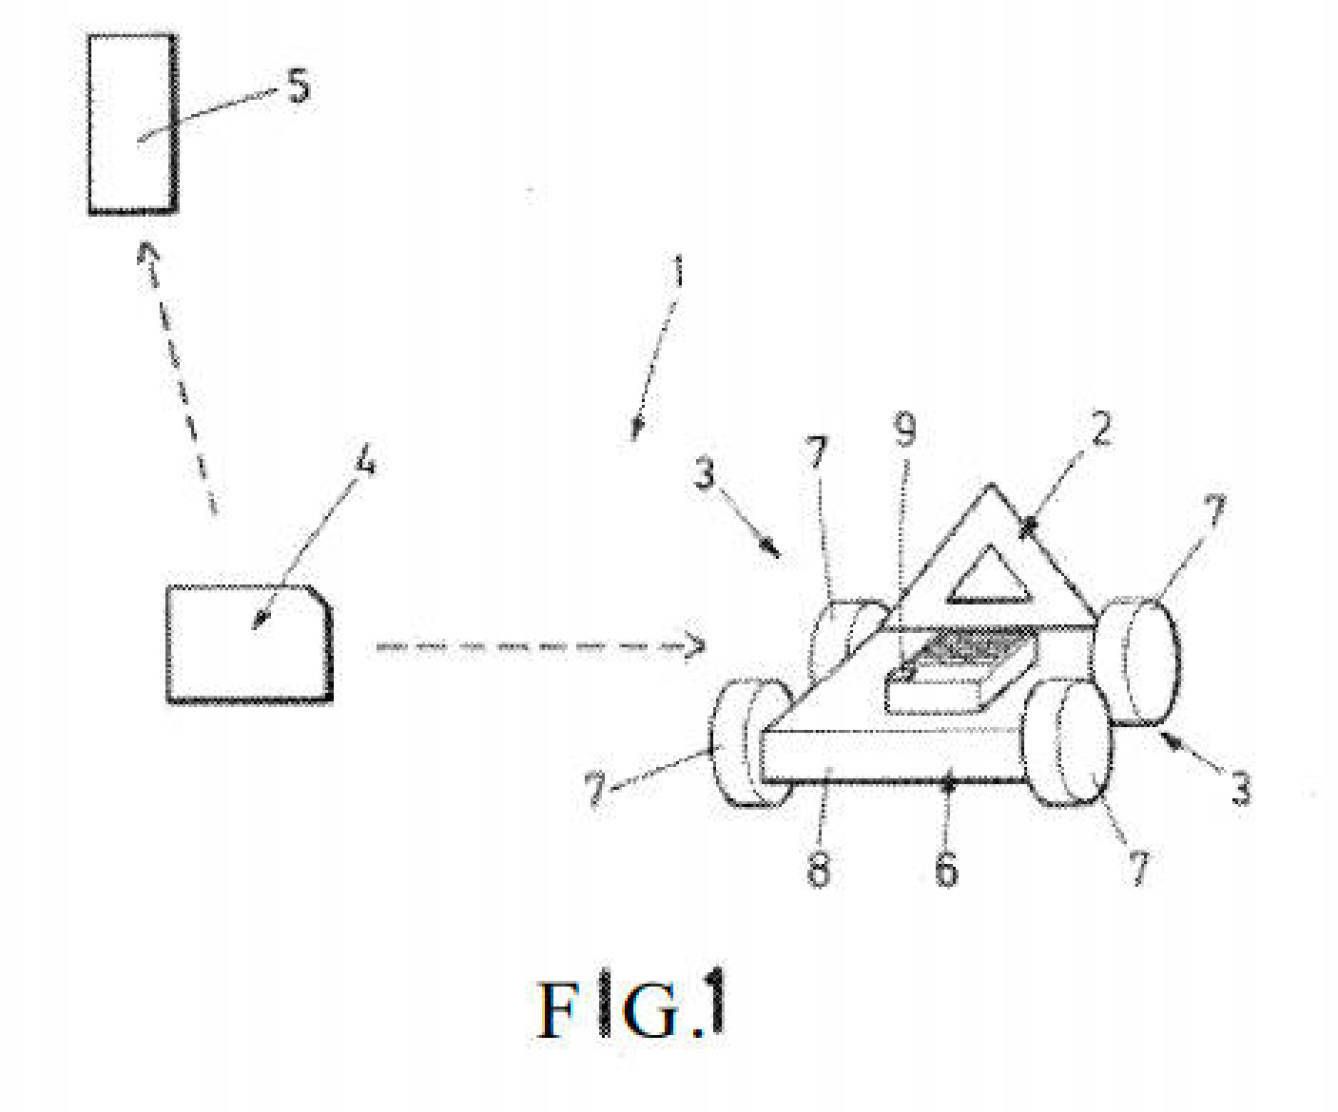 Pinche en la imagen para descargar la patente de Álvarez (PDF).